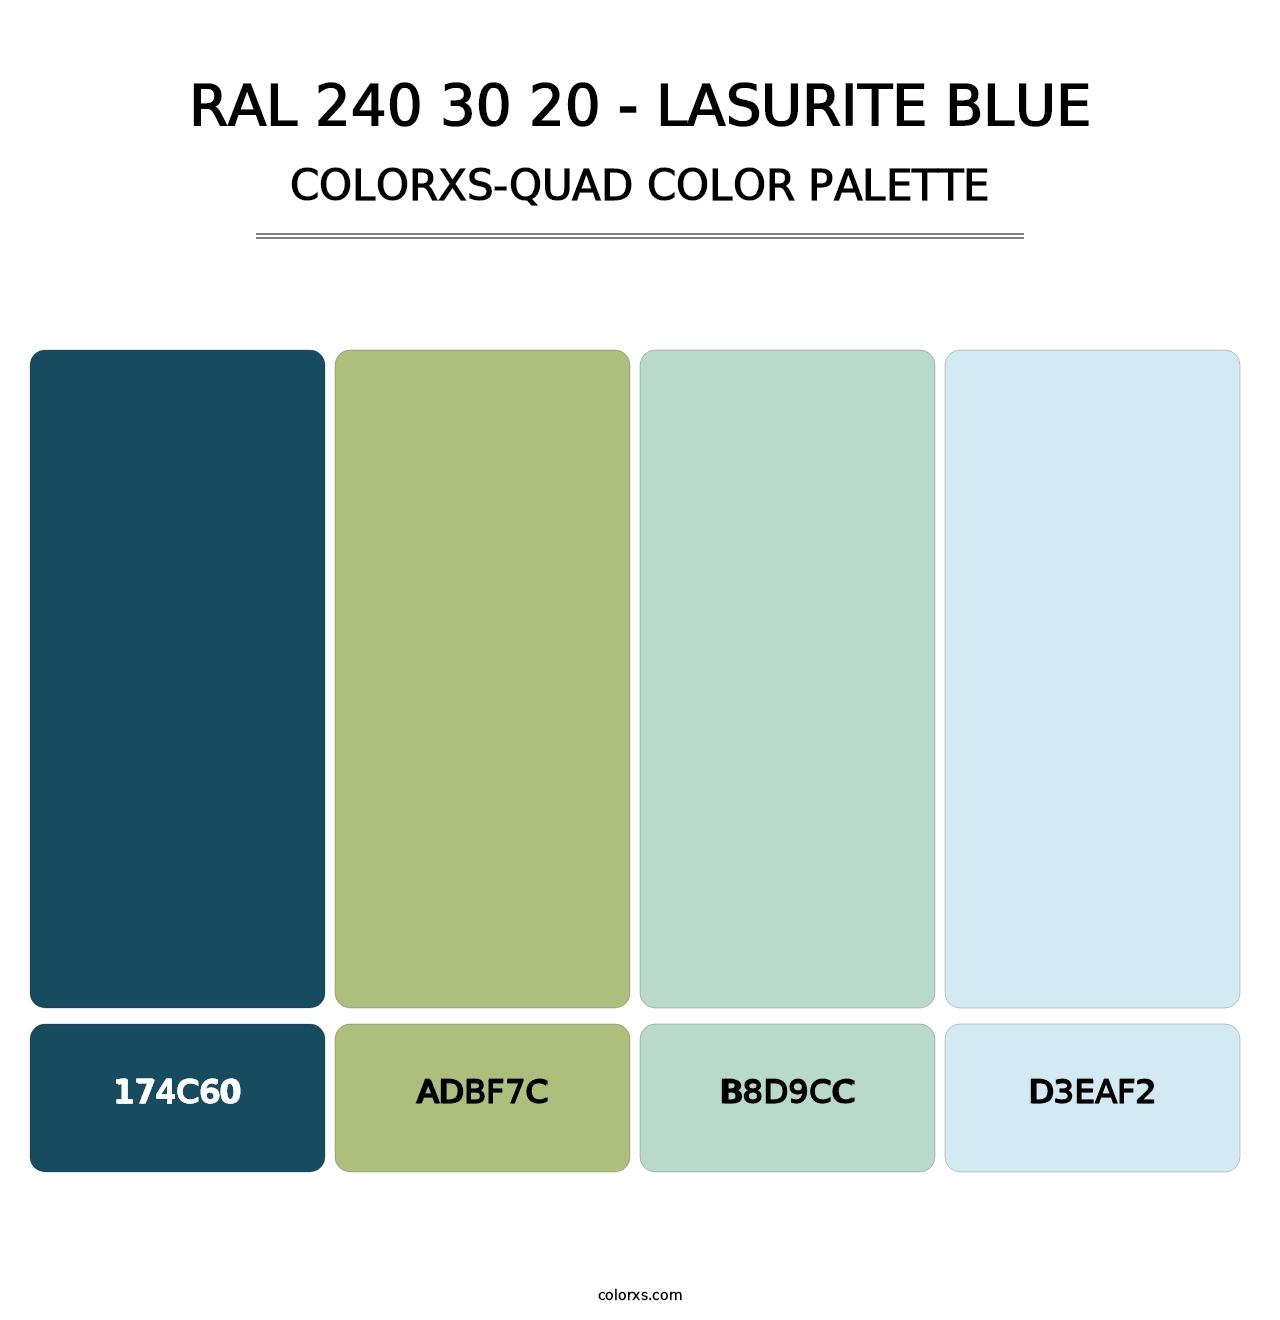 RAL 240 30 20 - Lasurite Blue - Colorxs Quad Palette